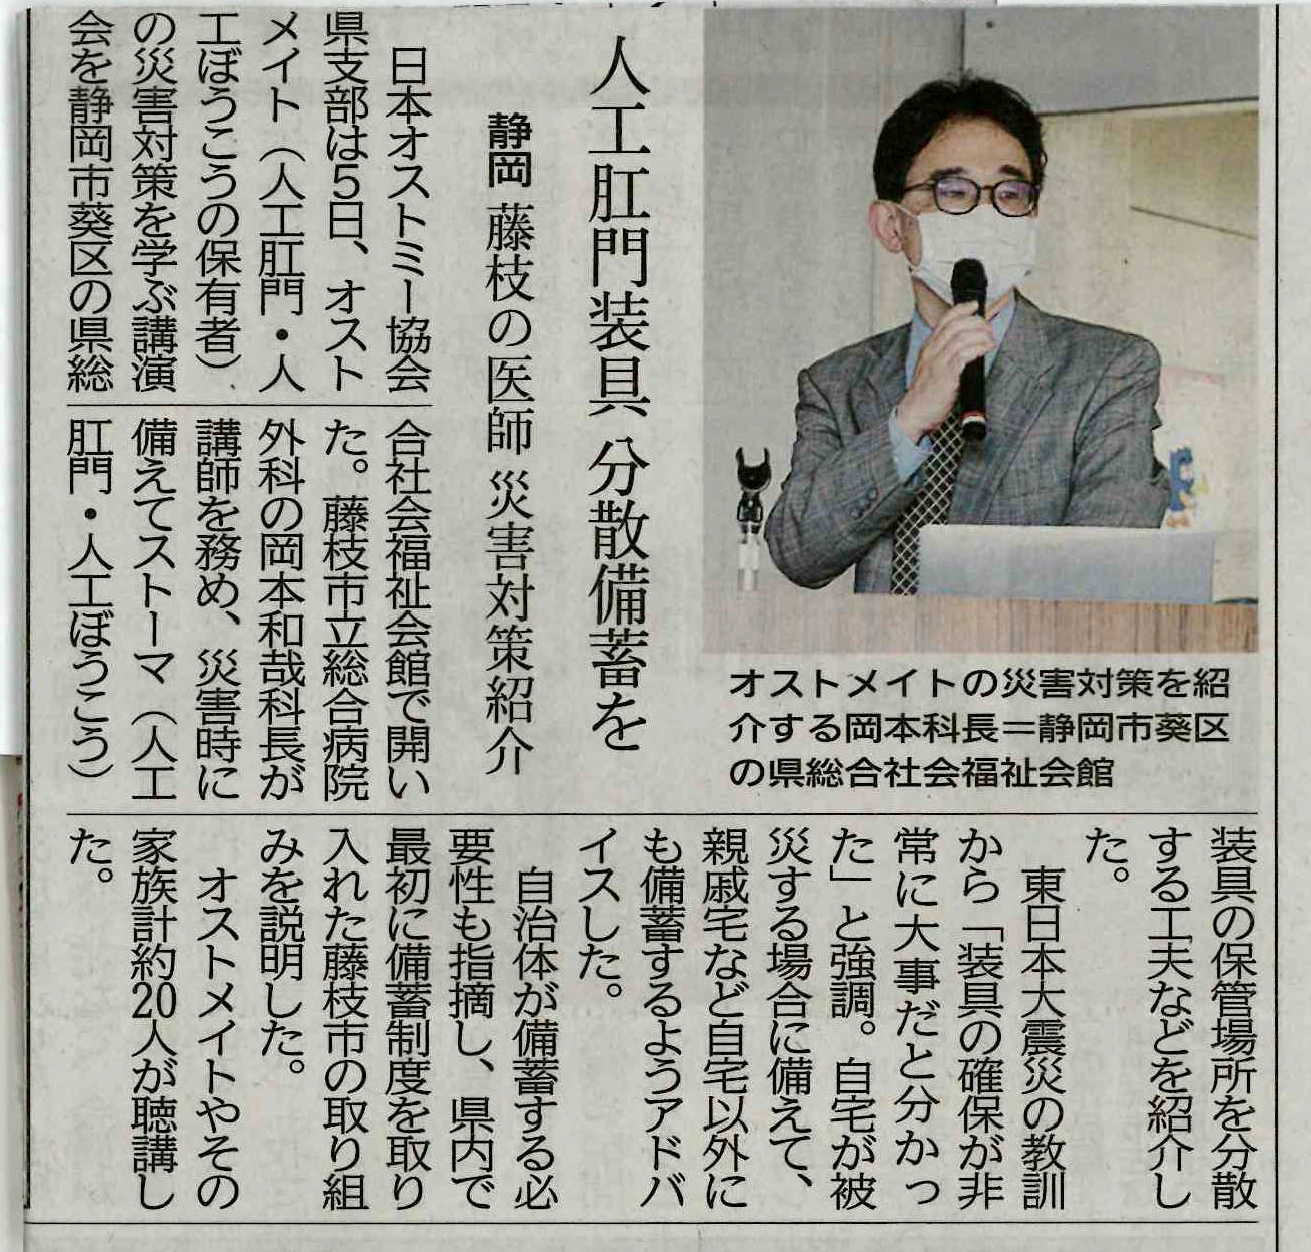 令和3年6月7日静岡新聞に掲載された岡本医師の記事人工肛門装具分散備蓄を